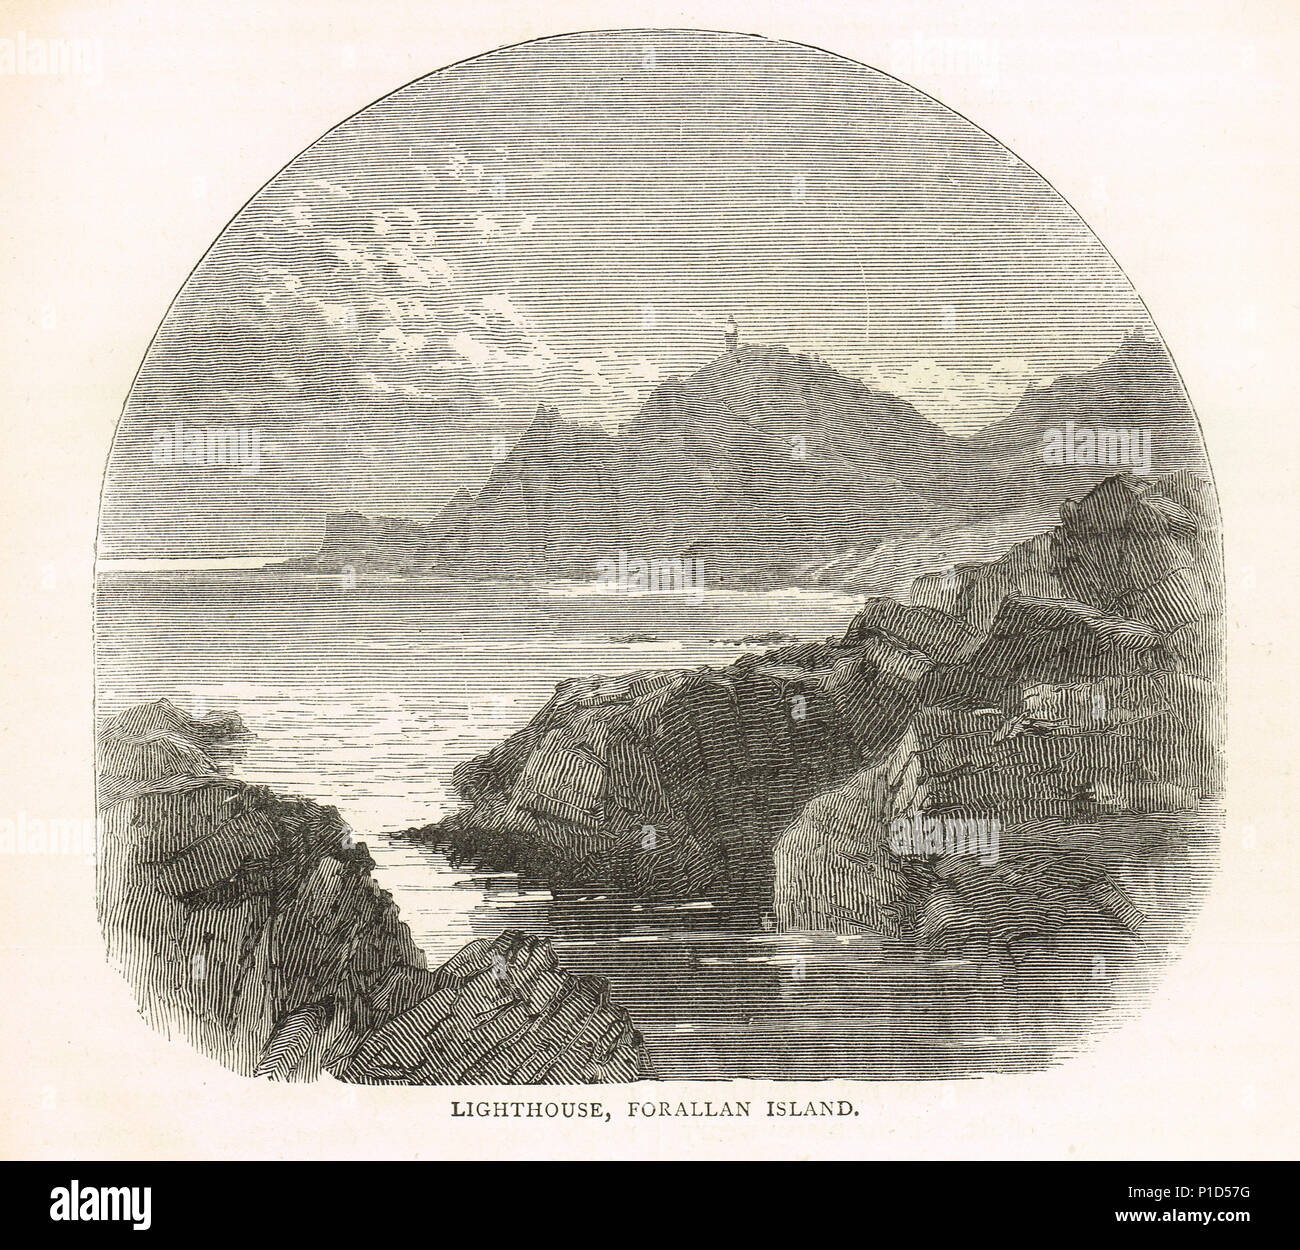 Farallon Island Light, California, 19th Century illustration Stock Photo